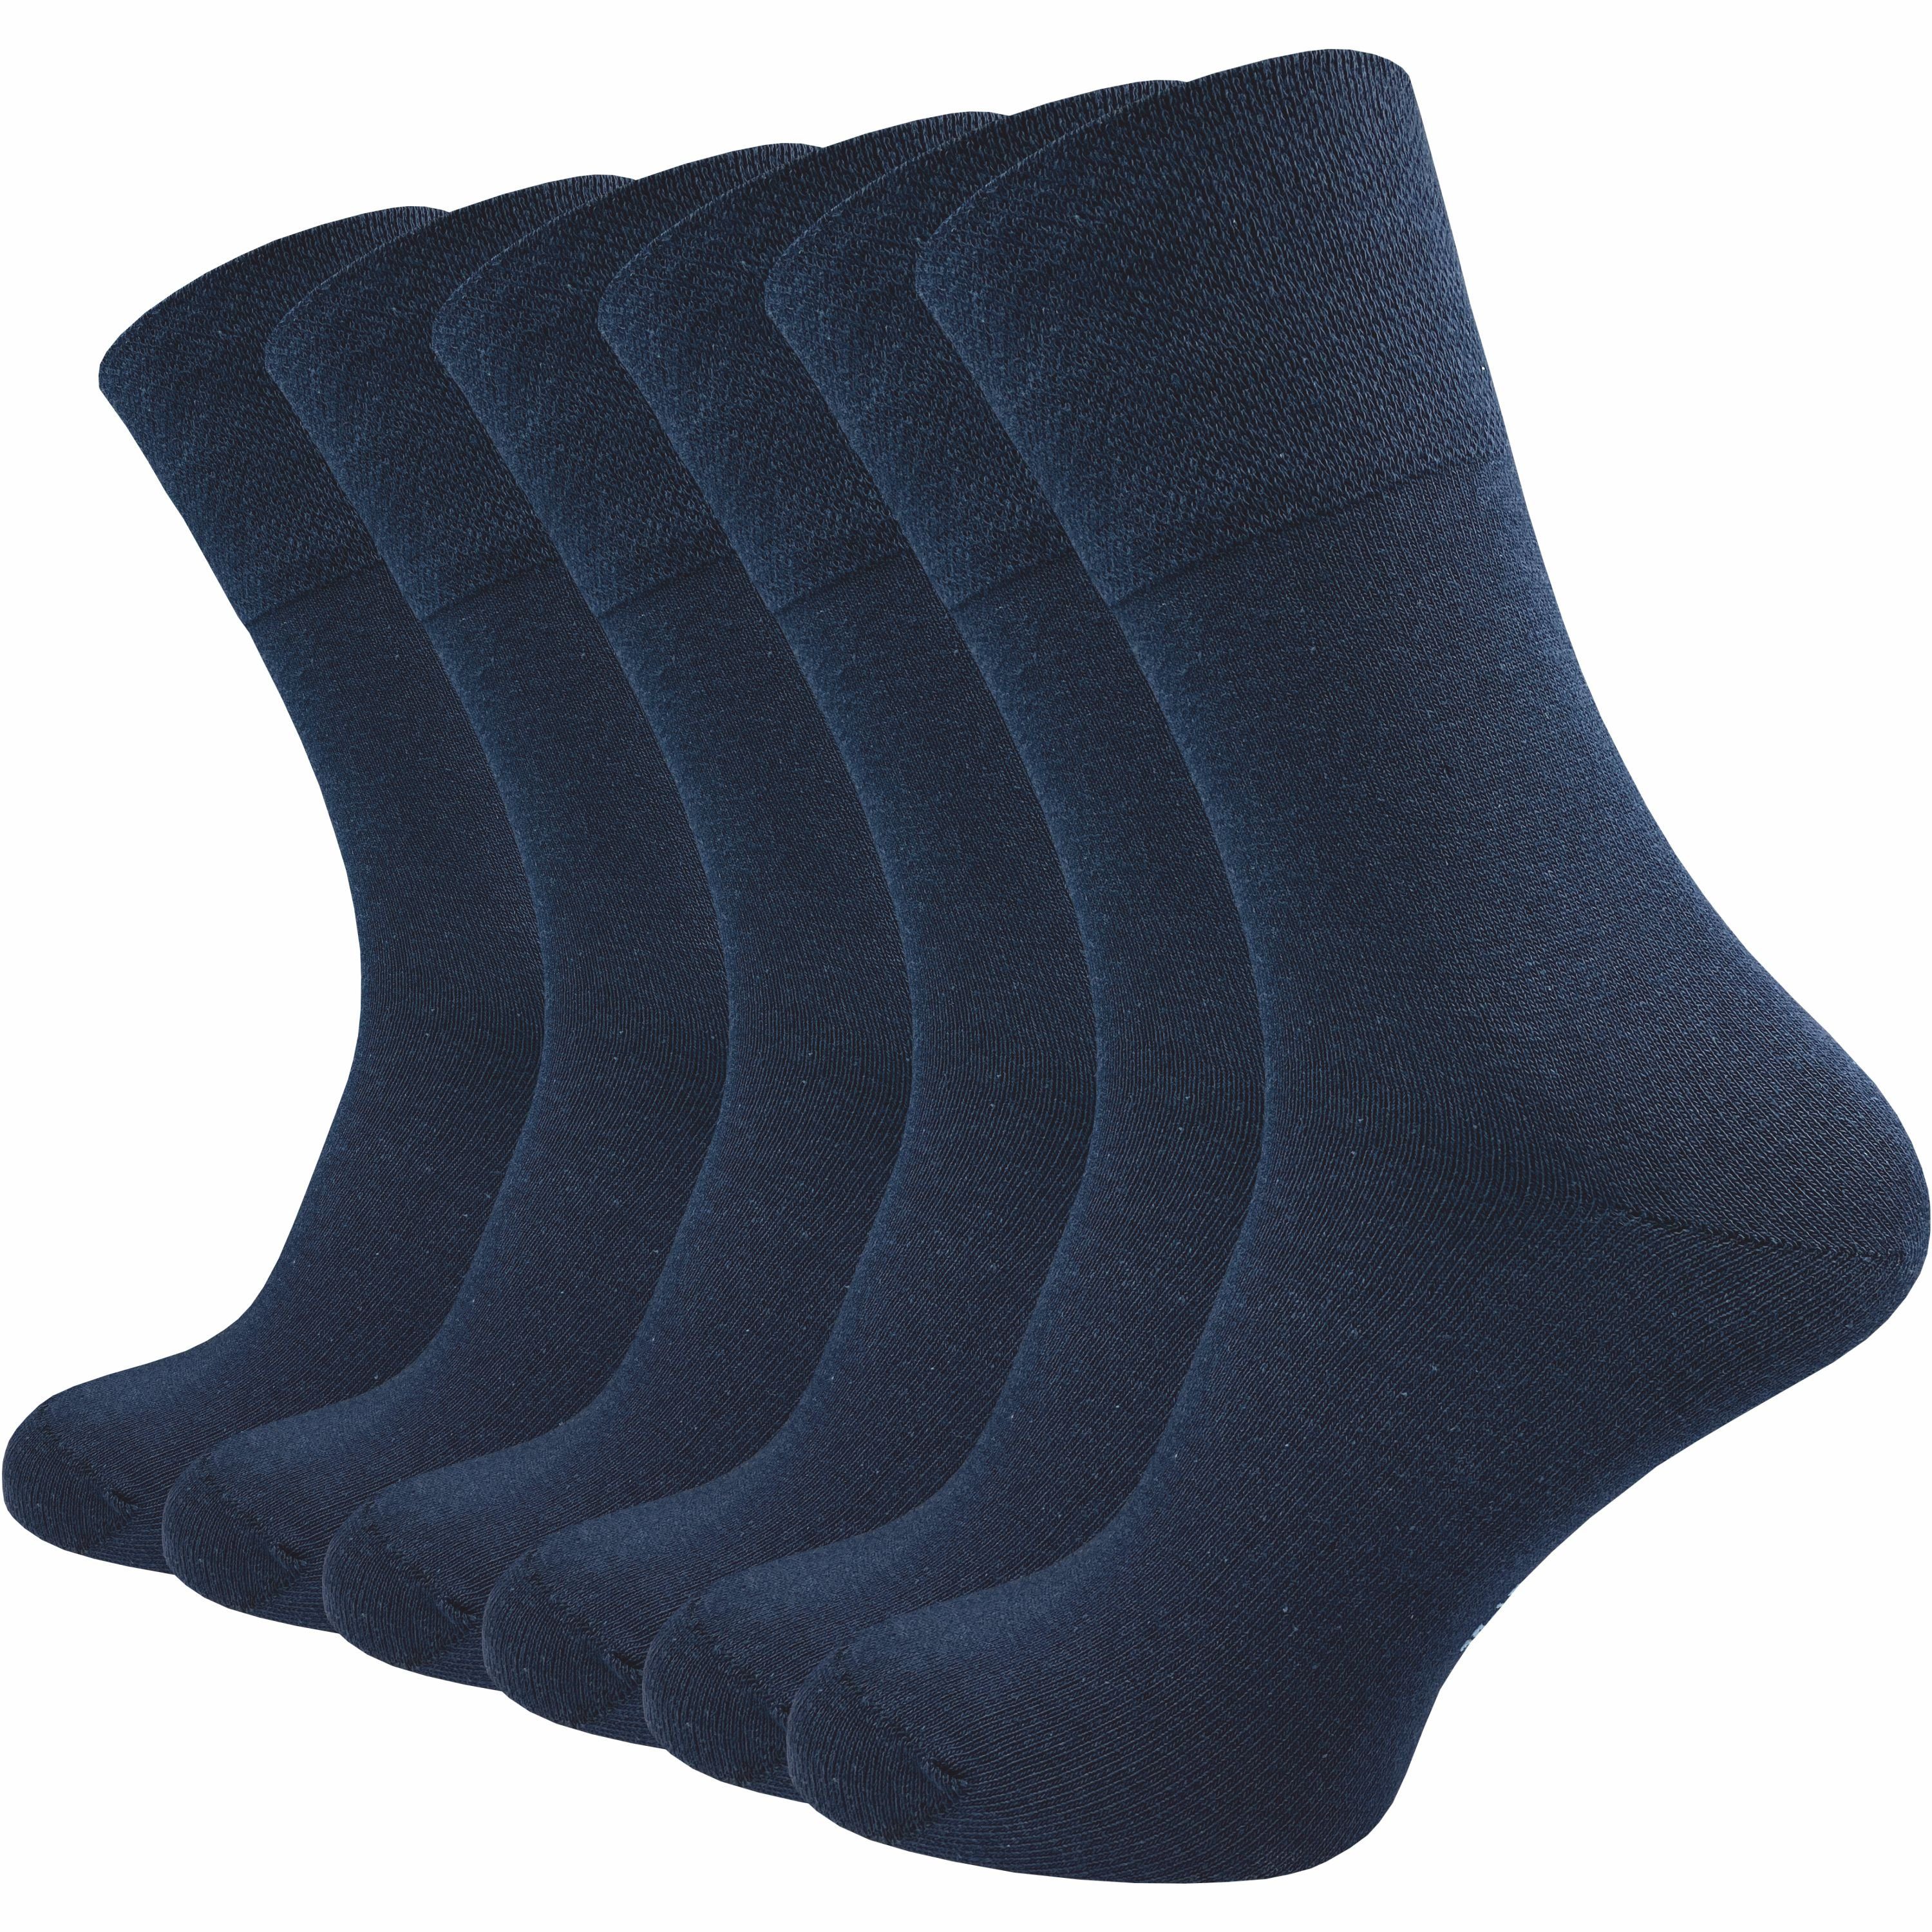 GAWILO Diabetikersocken für Damen, ohne Gummidruck & ohne drückende Naht - Business Socke (6 Paar) extra breiter Piquet-Strick am Komfortbund; in schwarz, grau & weitere blau